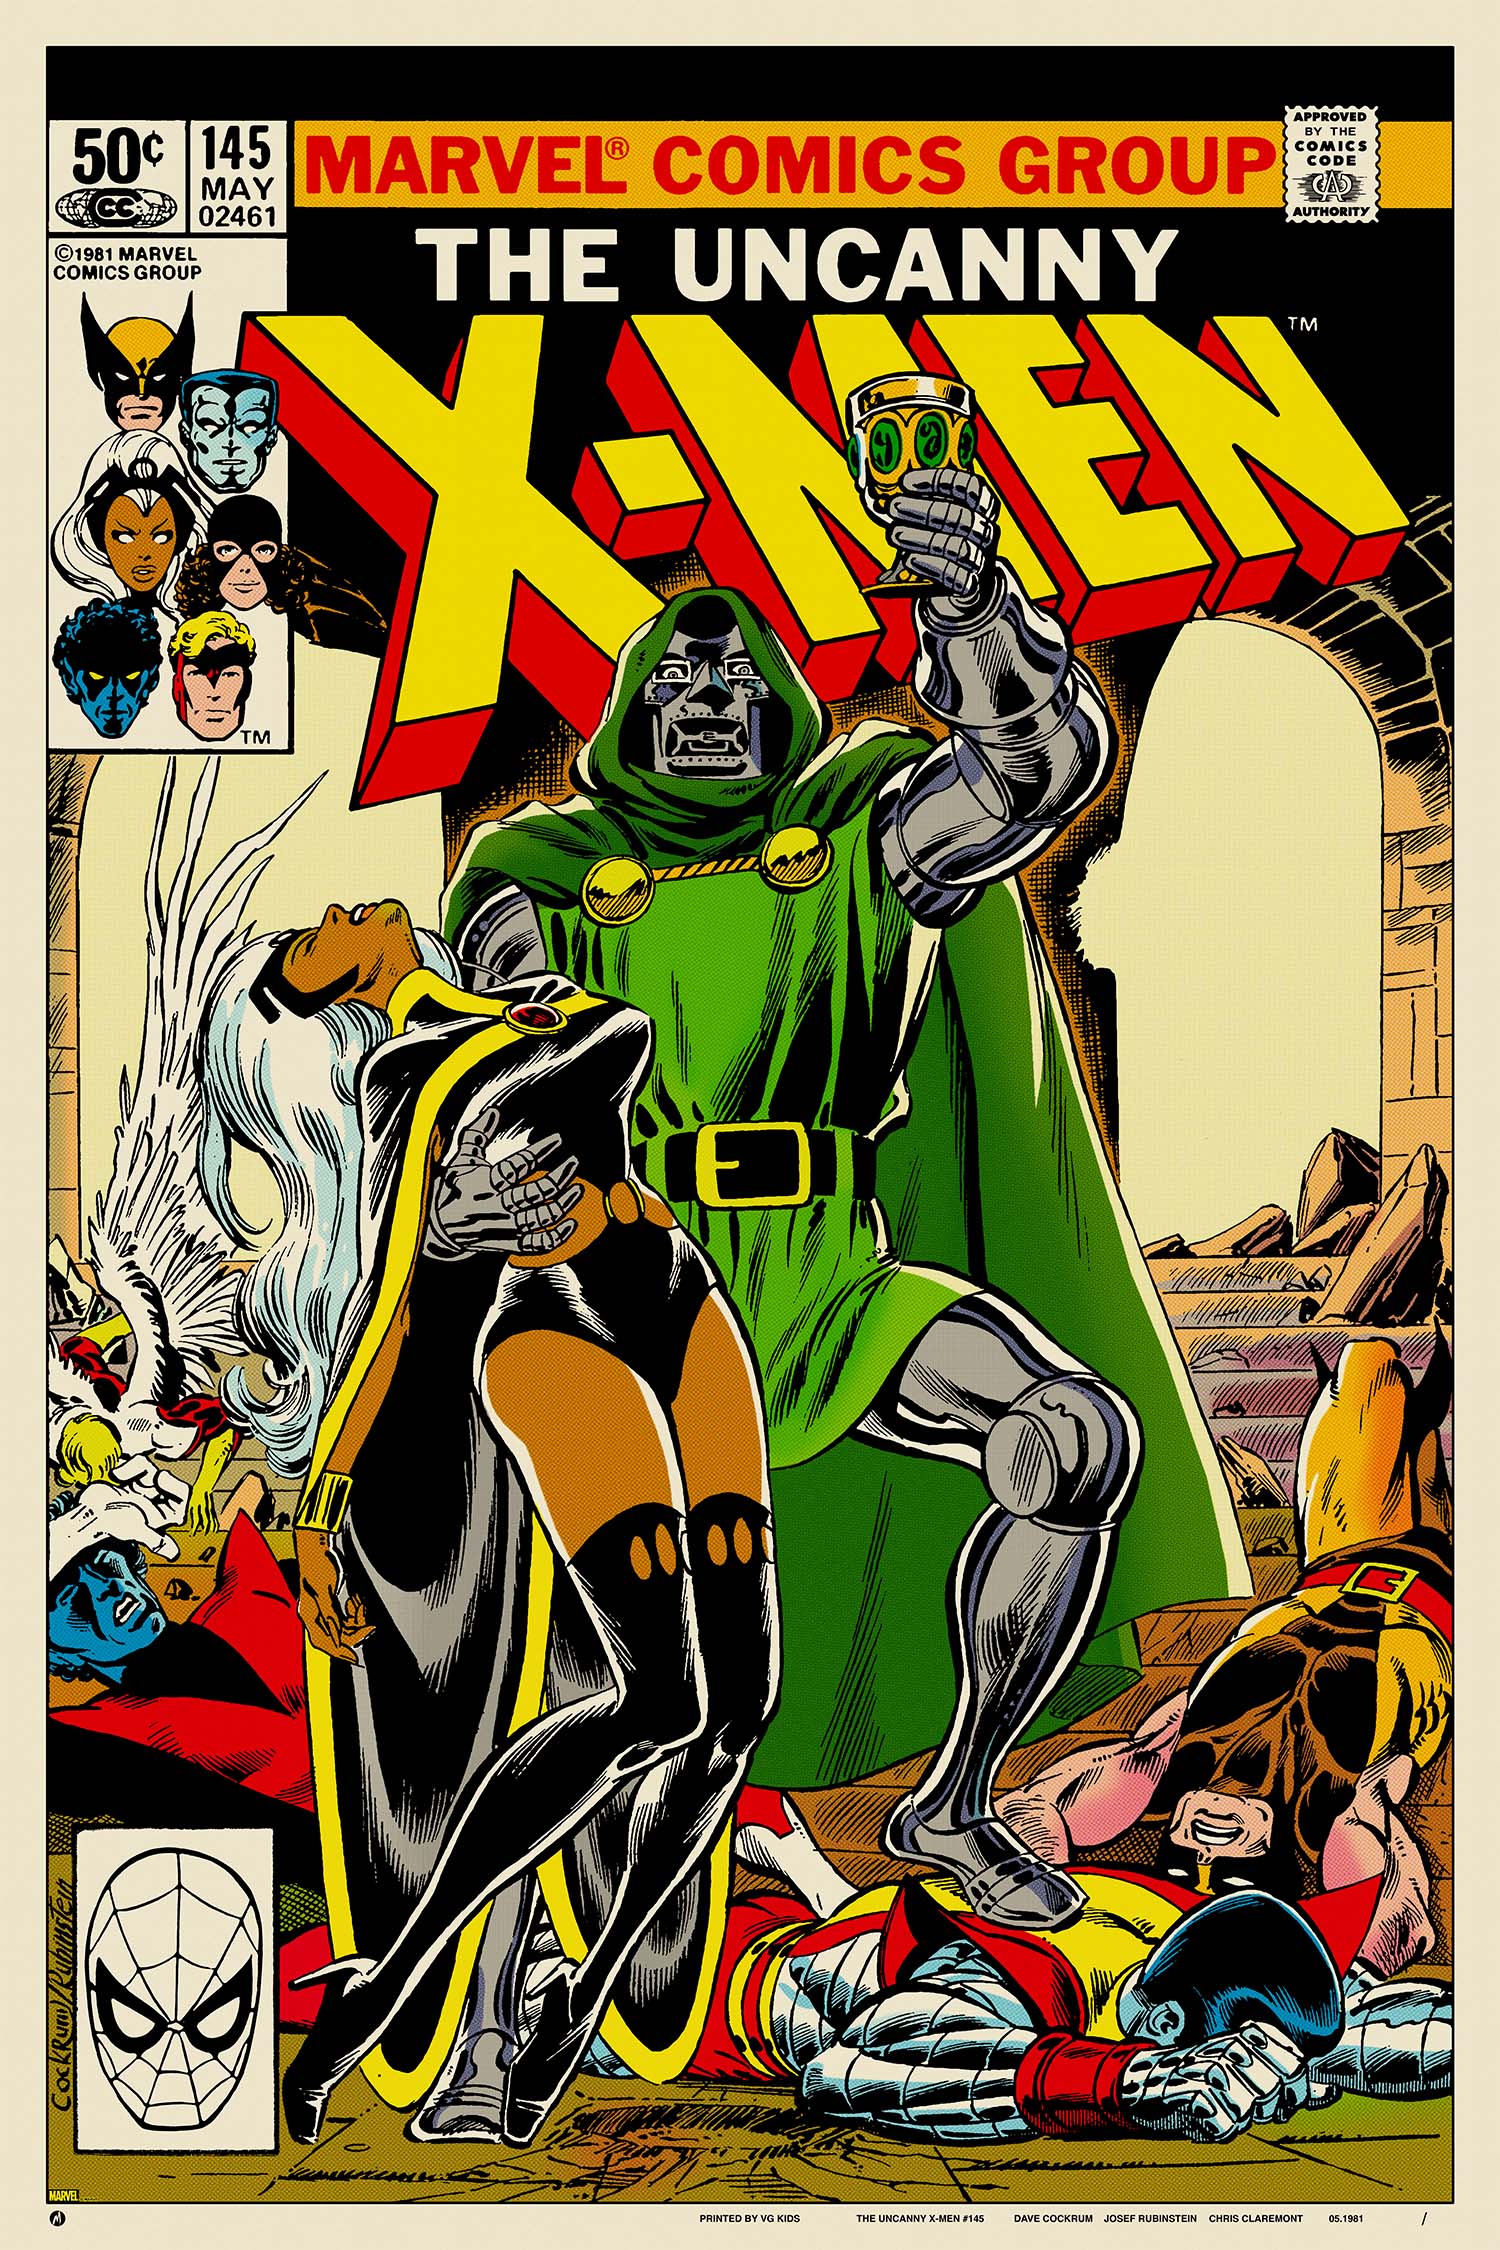 アメコミ・リーフ X-メン【計21冊】『Uncanny X-Men 500 Issues Poster